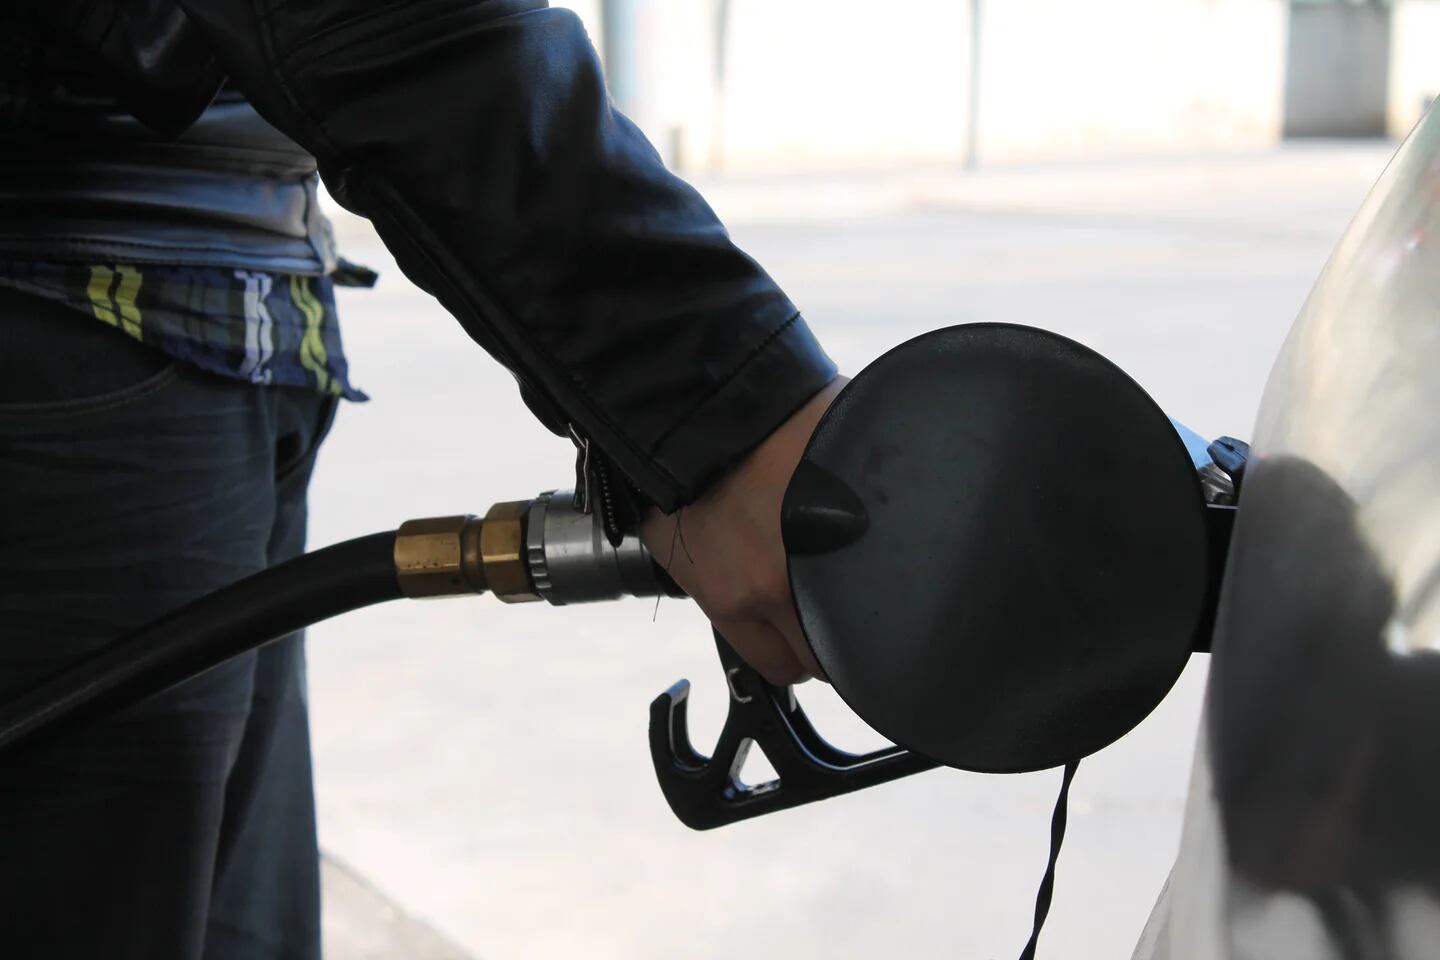 Atentos: el galón de gasolina quedará en 15.164 pesos en Colombia